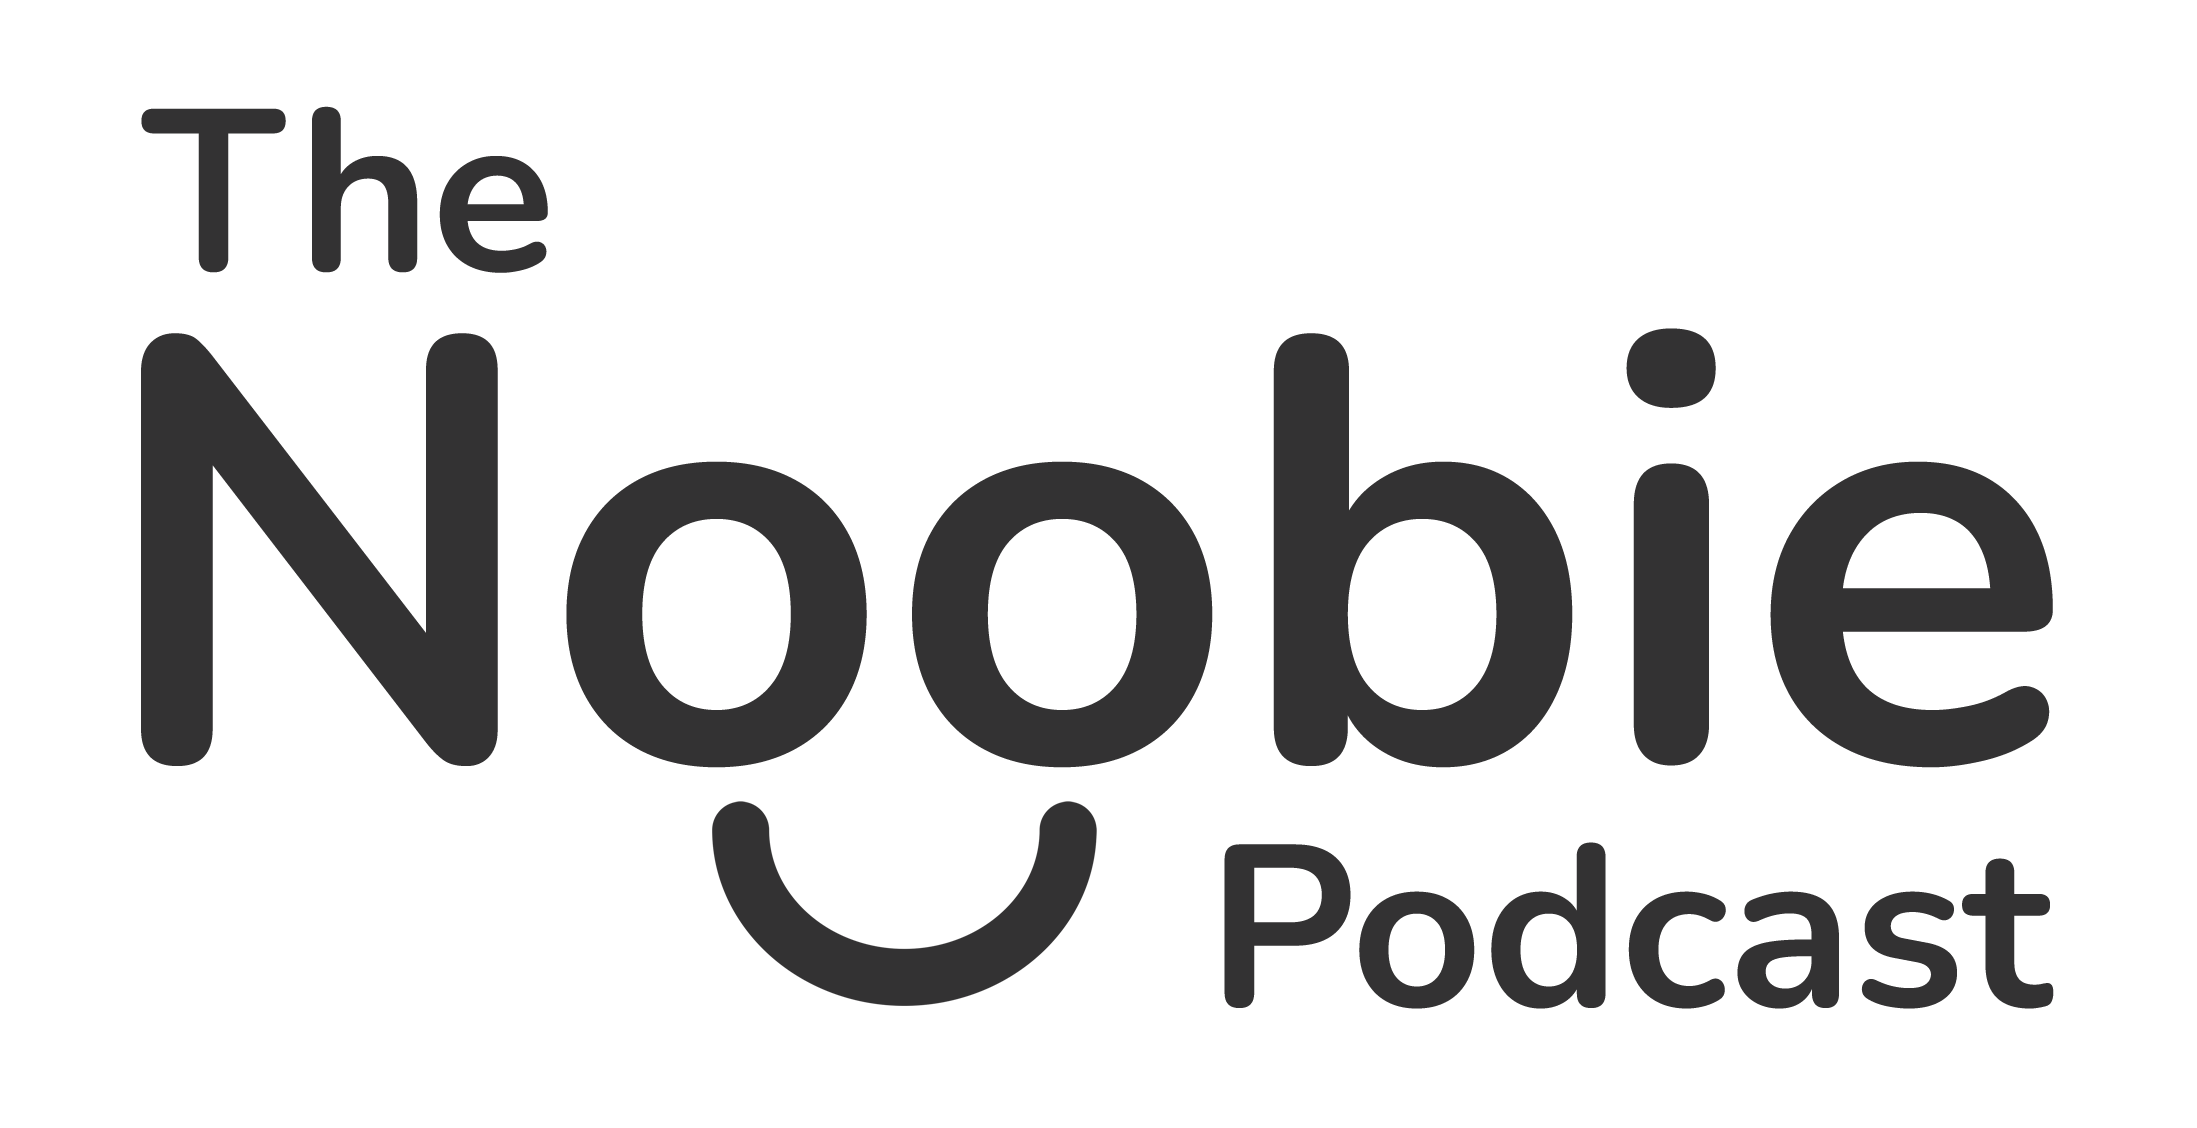 The Noobie Podcast